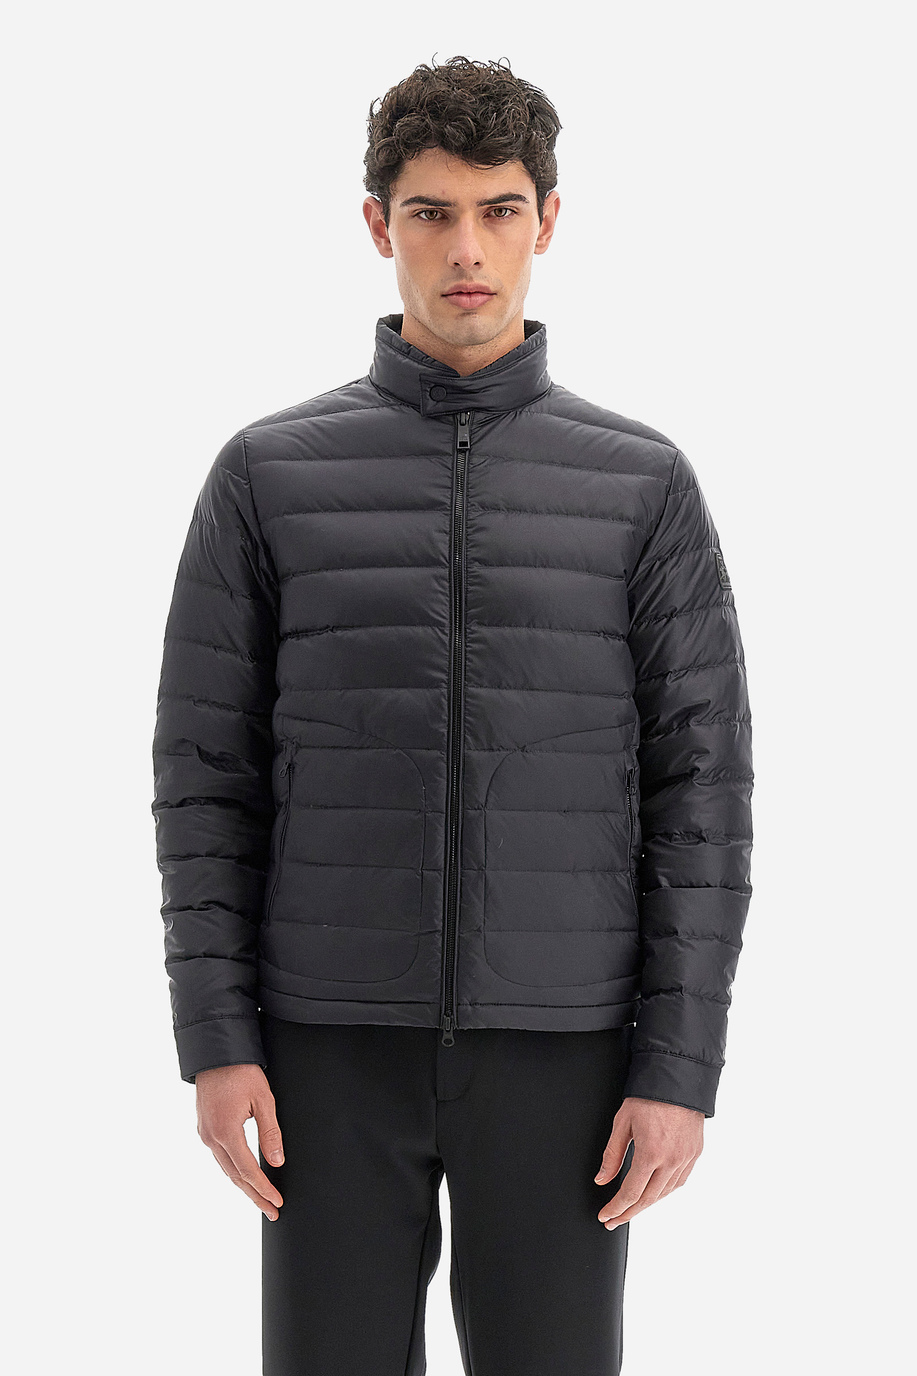 Outdoor giacca uomo regular fit - Way - Antipioggia & Antivento | La Martina - Official Online Shop